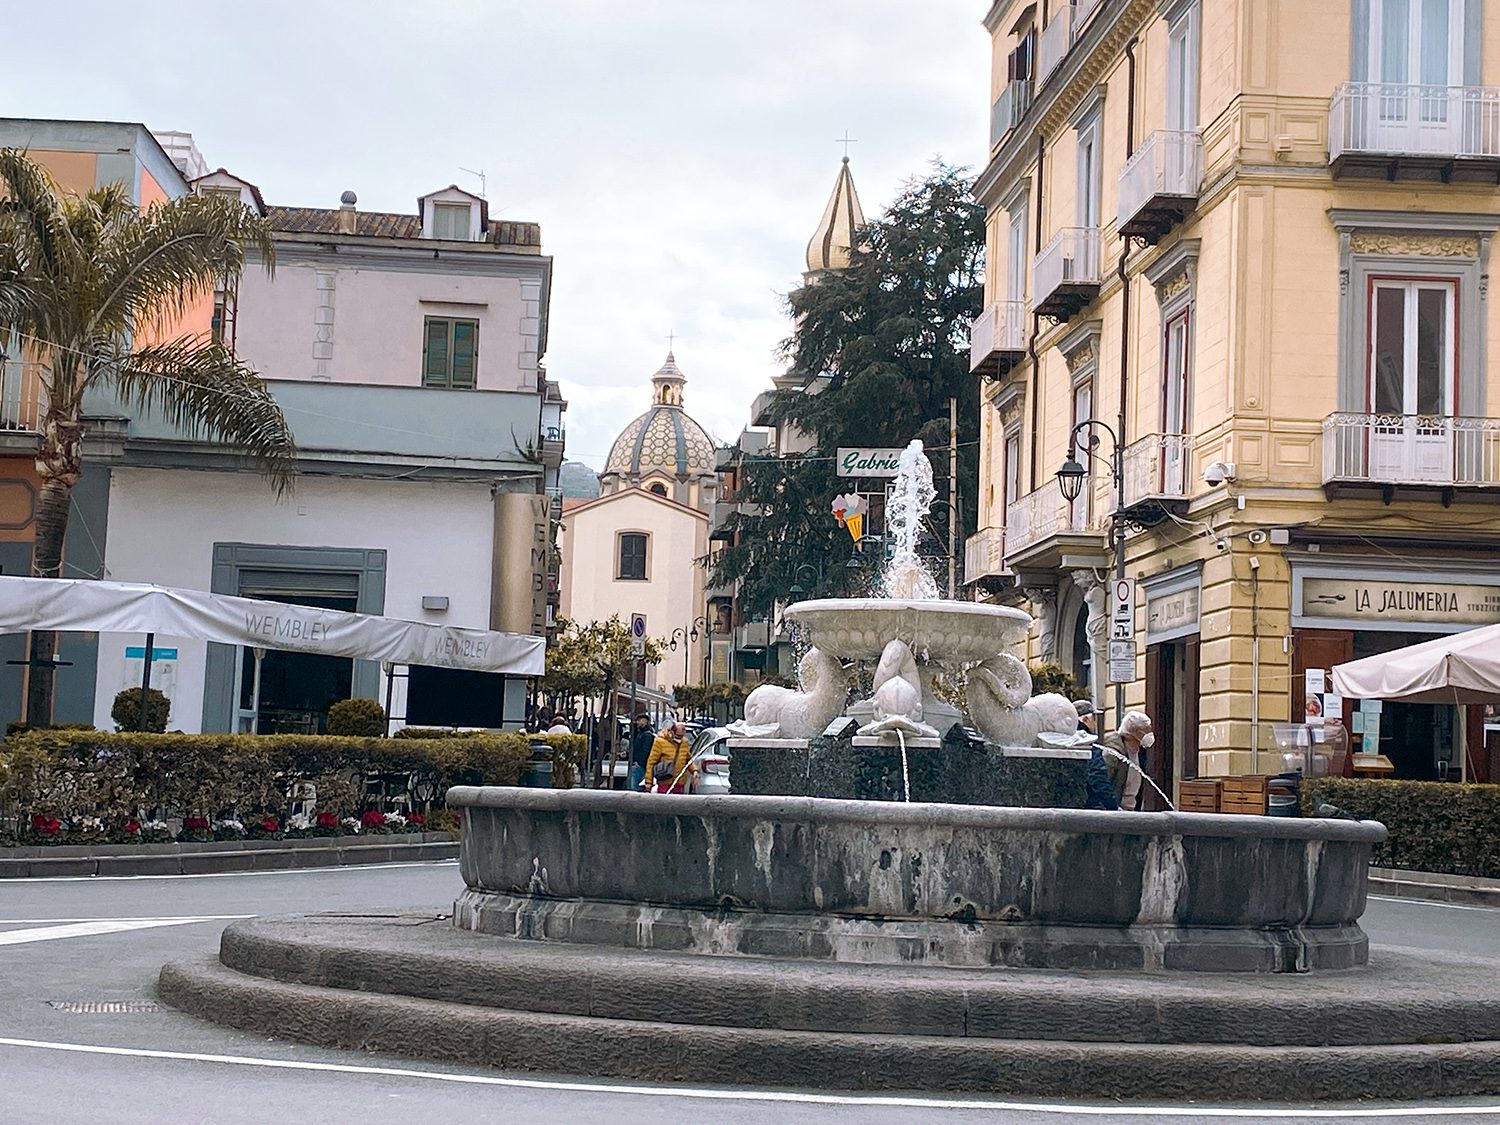 Vico Equense: Piazza Umberto I Fountain